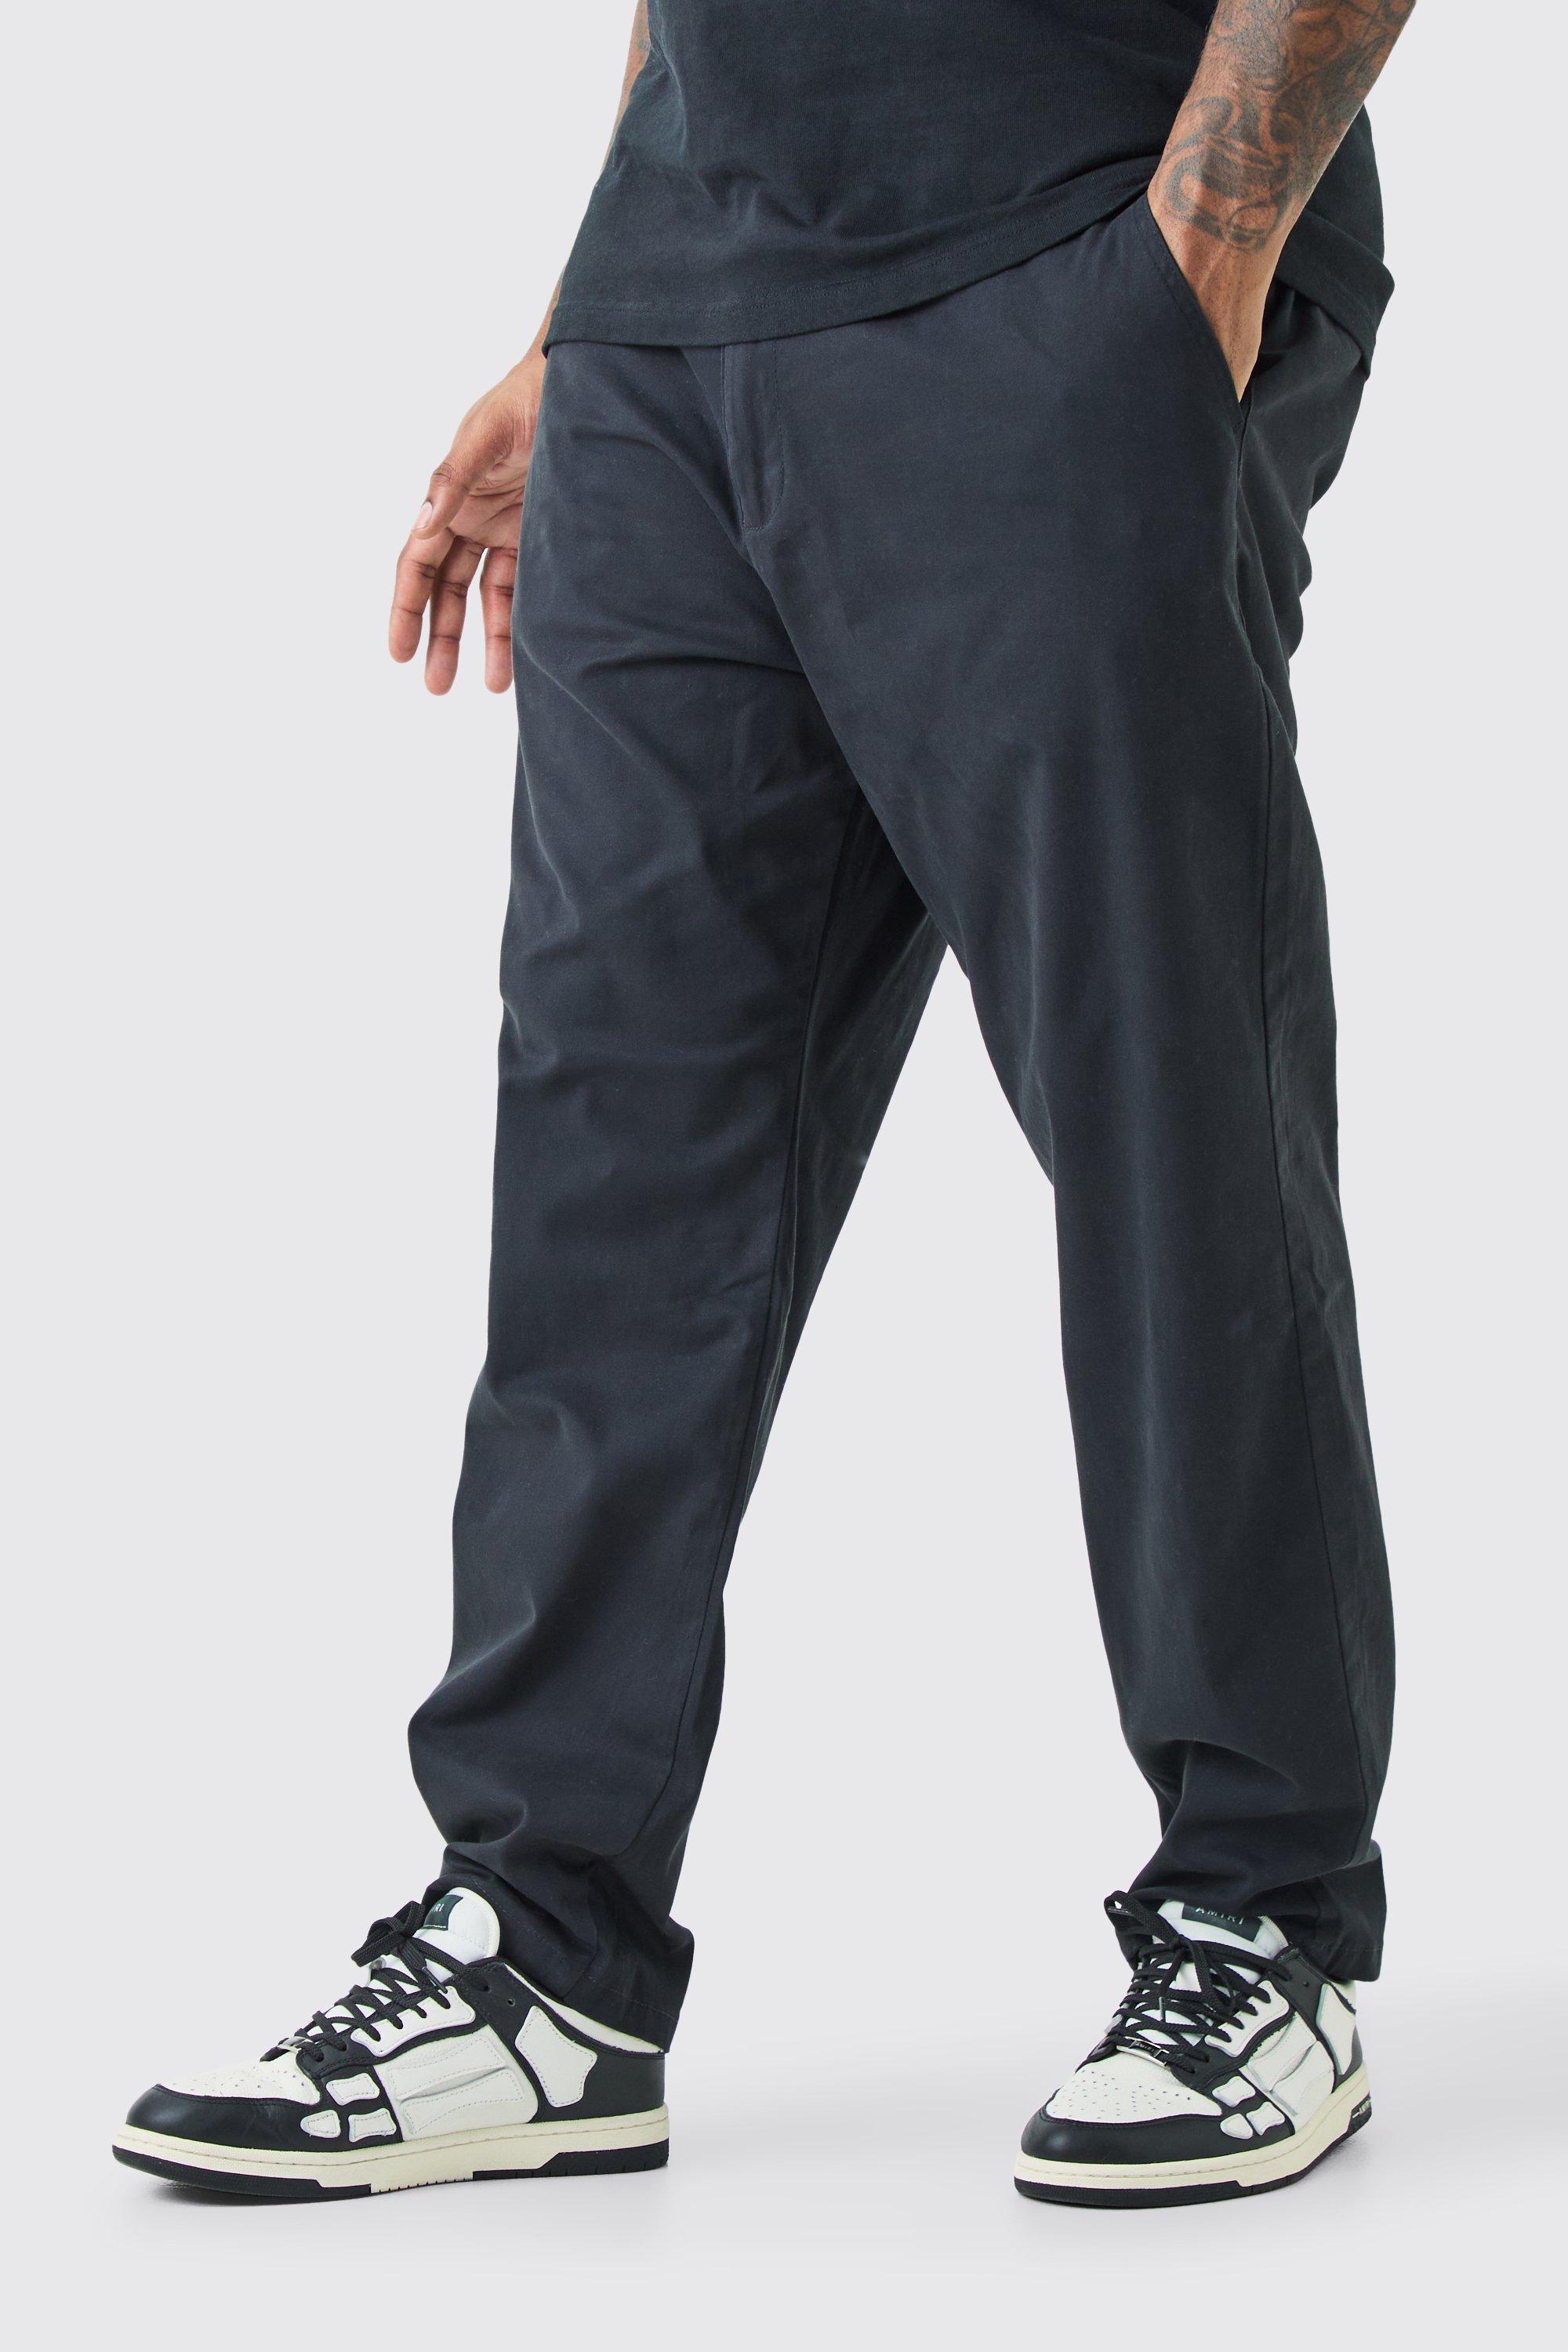 Image of Pantaloni Chino Plus Size Skinny Fit con vita fissa, Nero